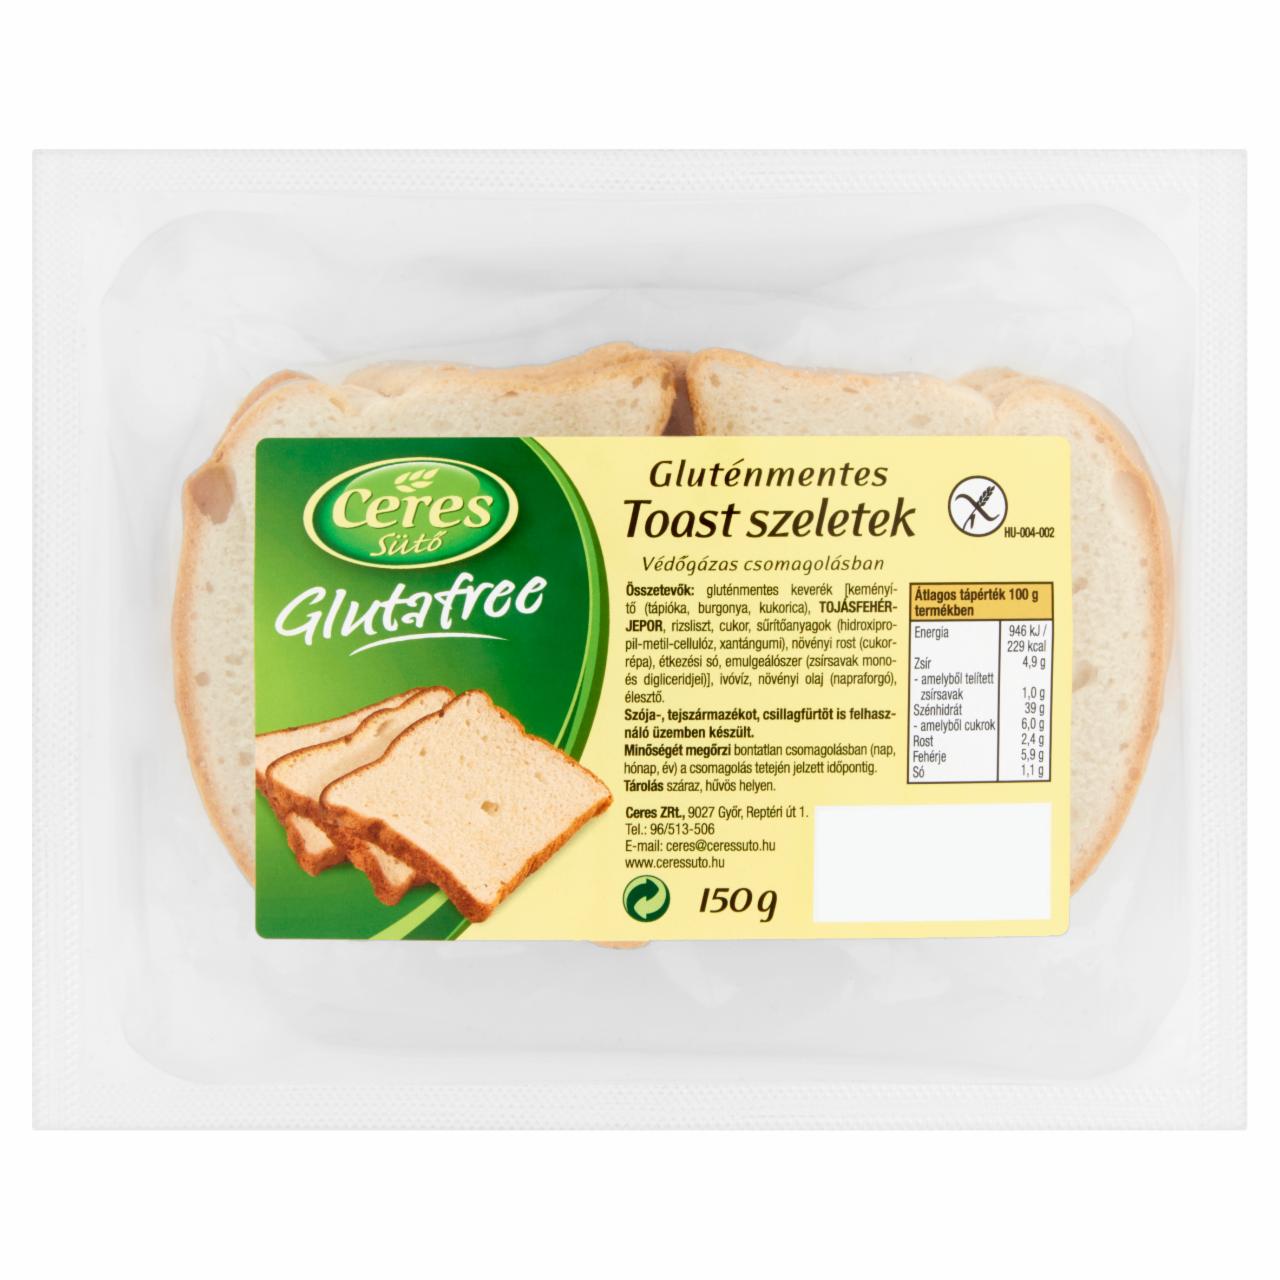 Képek - Ceres Sütő Glutafree gluténmentes toast szeletek 150 g